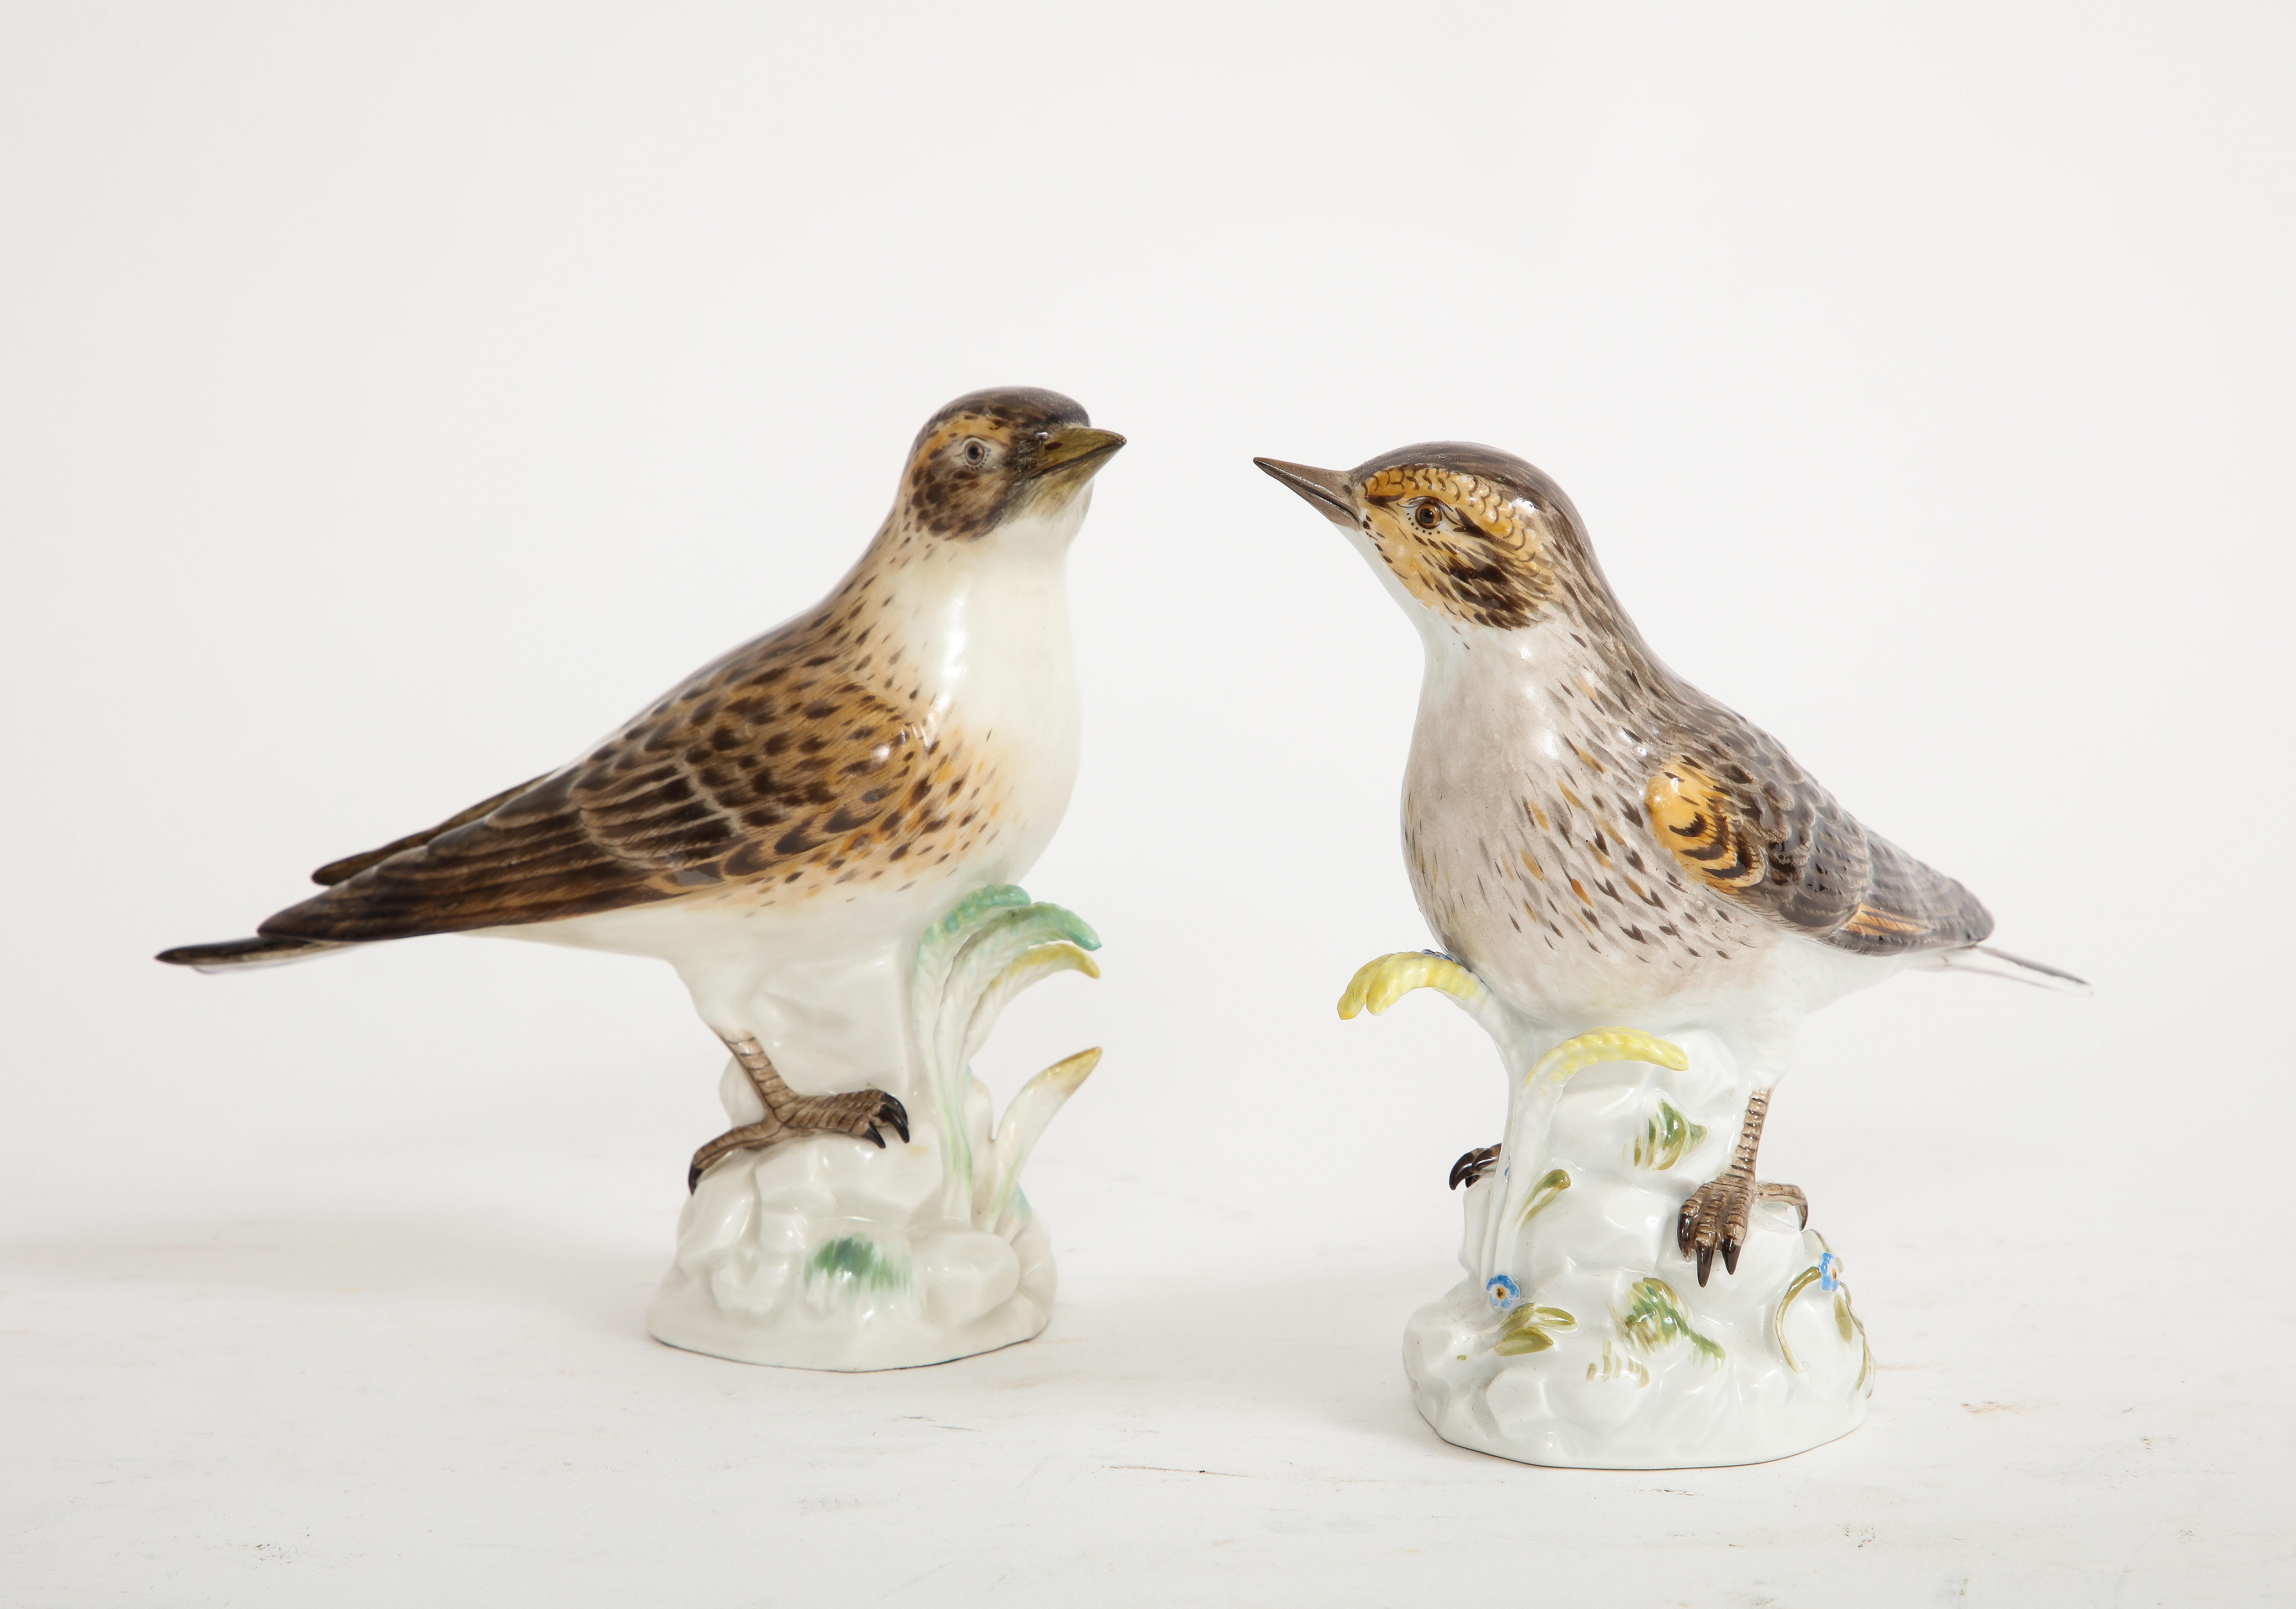 Paire de modèles en porcelaine de Meissen du 20e siècle représentant des oiseaux bruns. Chacun d'entre eux est représenté de manière naturaliste, perché sur un arbre blanc parsemé de fougères et de fleurs. Ils sont vraiment magnifiques et très